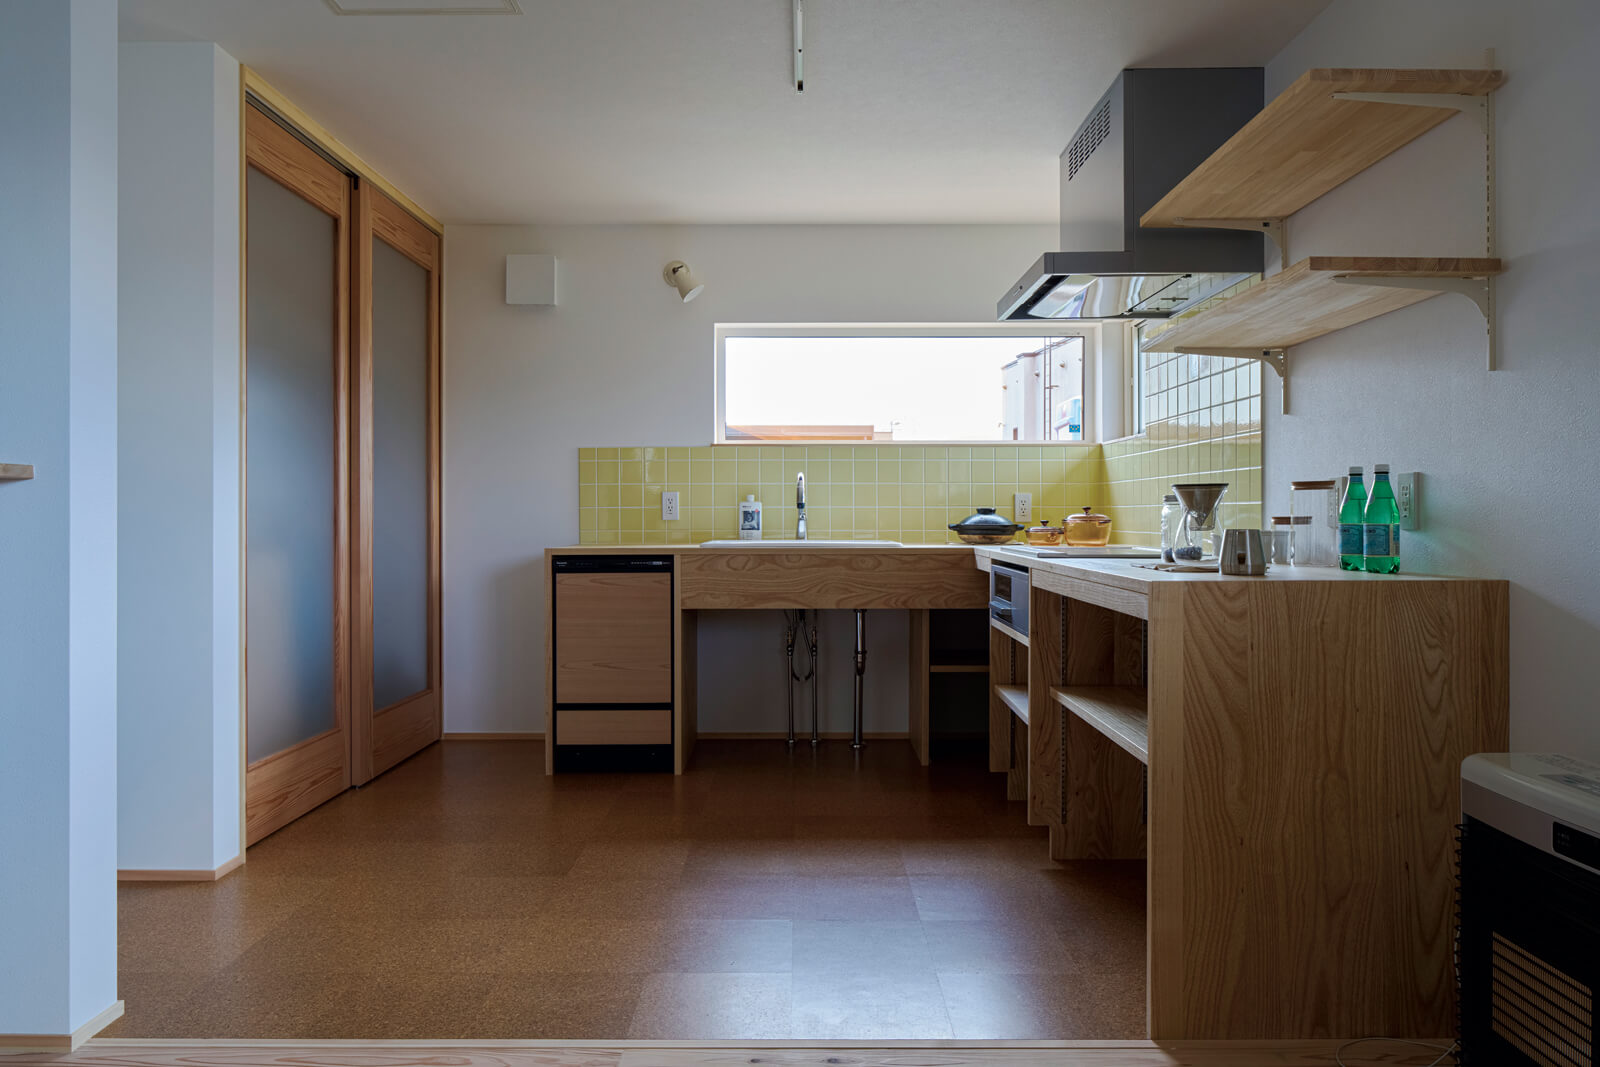 パントリーを備えたキッチンは壁付け・L字型に造作することで、省スペースと家事効率の向上を実現。床には耐水性に優れ、足触りの良いコルクタイルを採用した。窓を配することで視線が抜け、壁付けの圧迫感が軽減